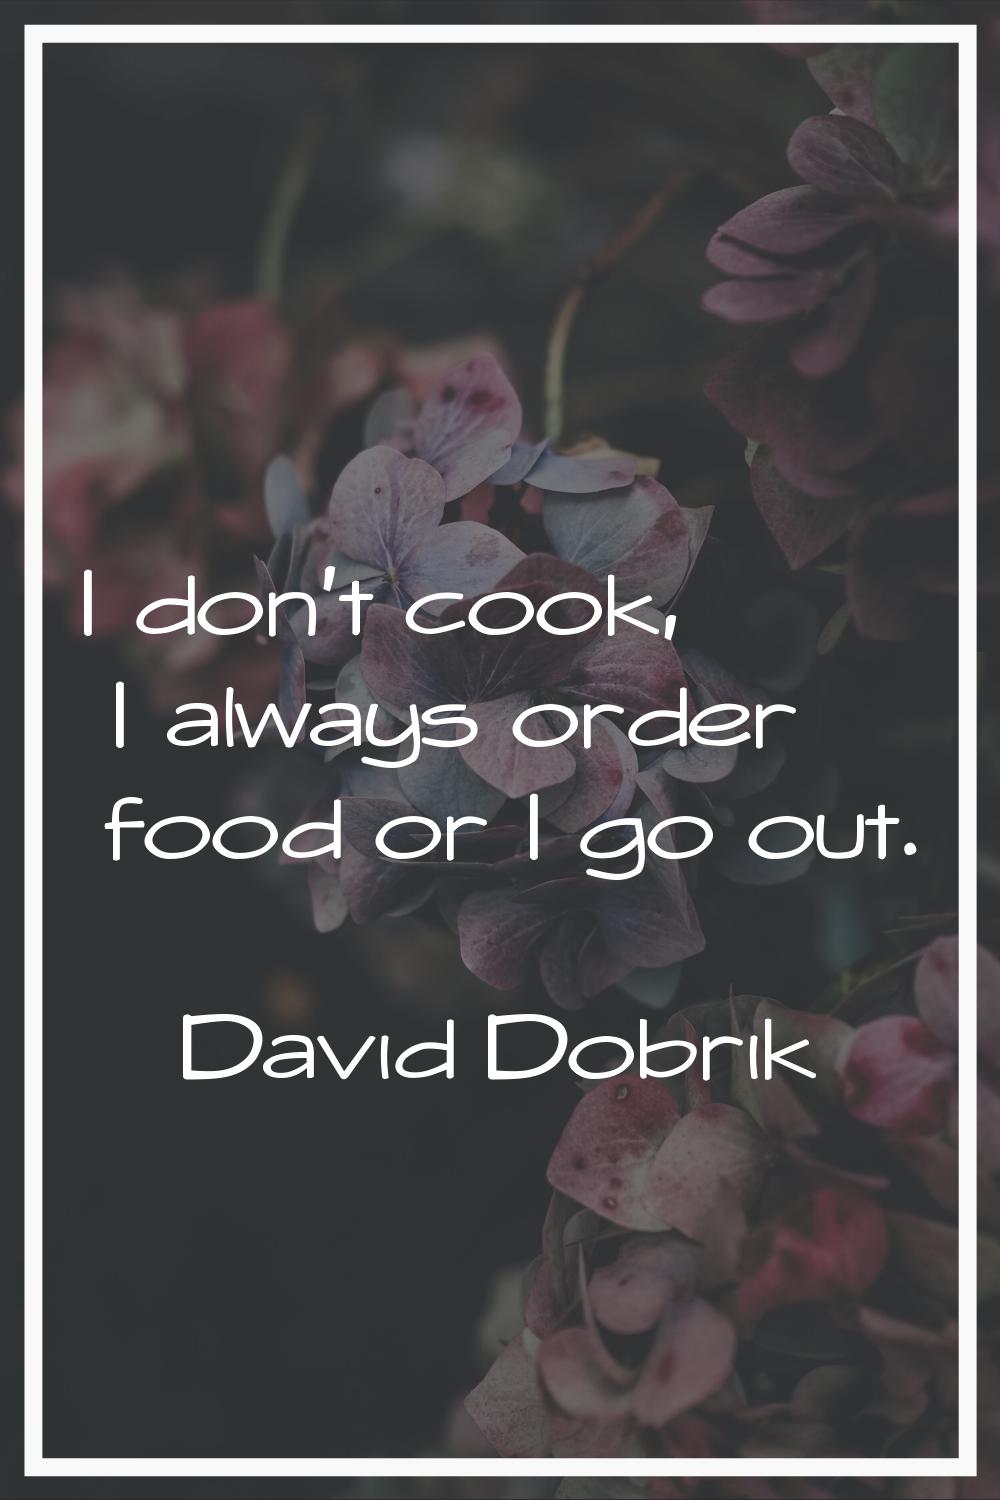 I don't cook, I always order food or I go out.